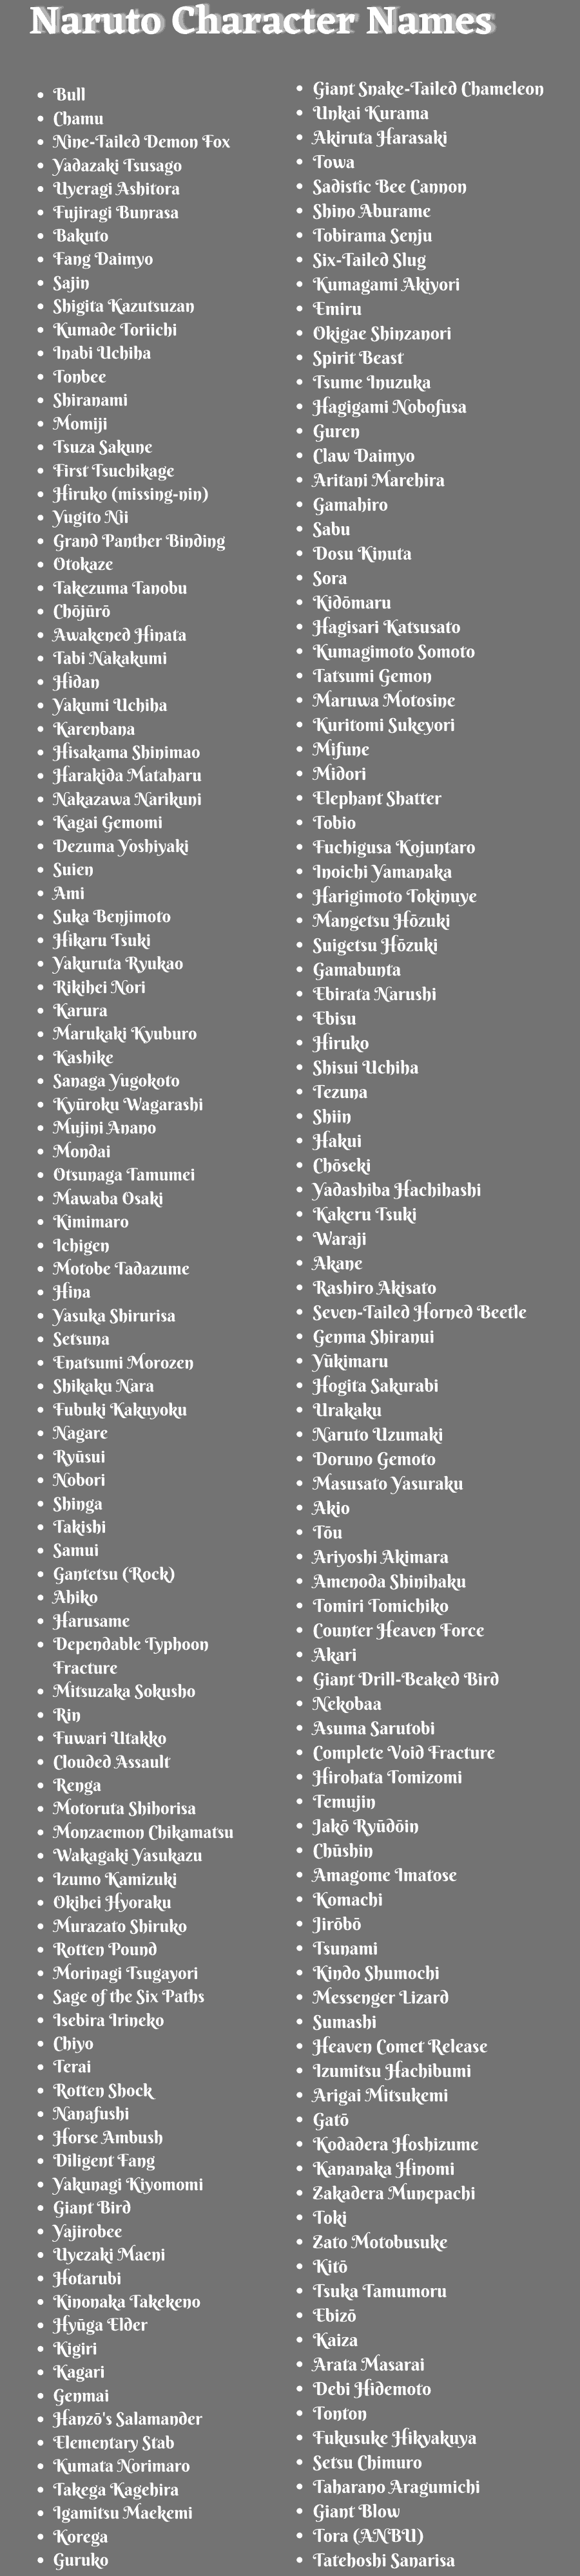 Naruto Character Names